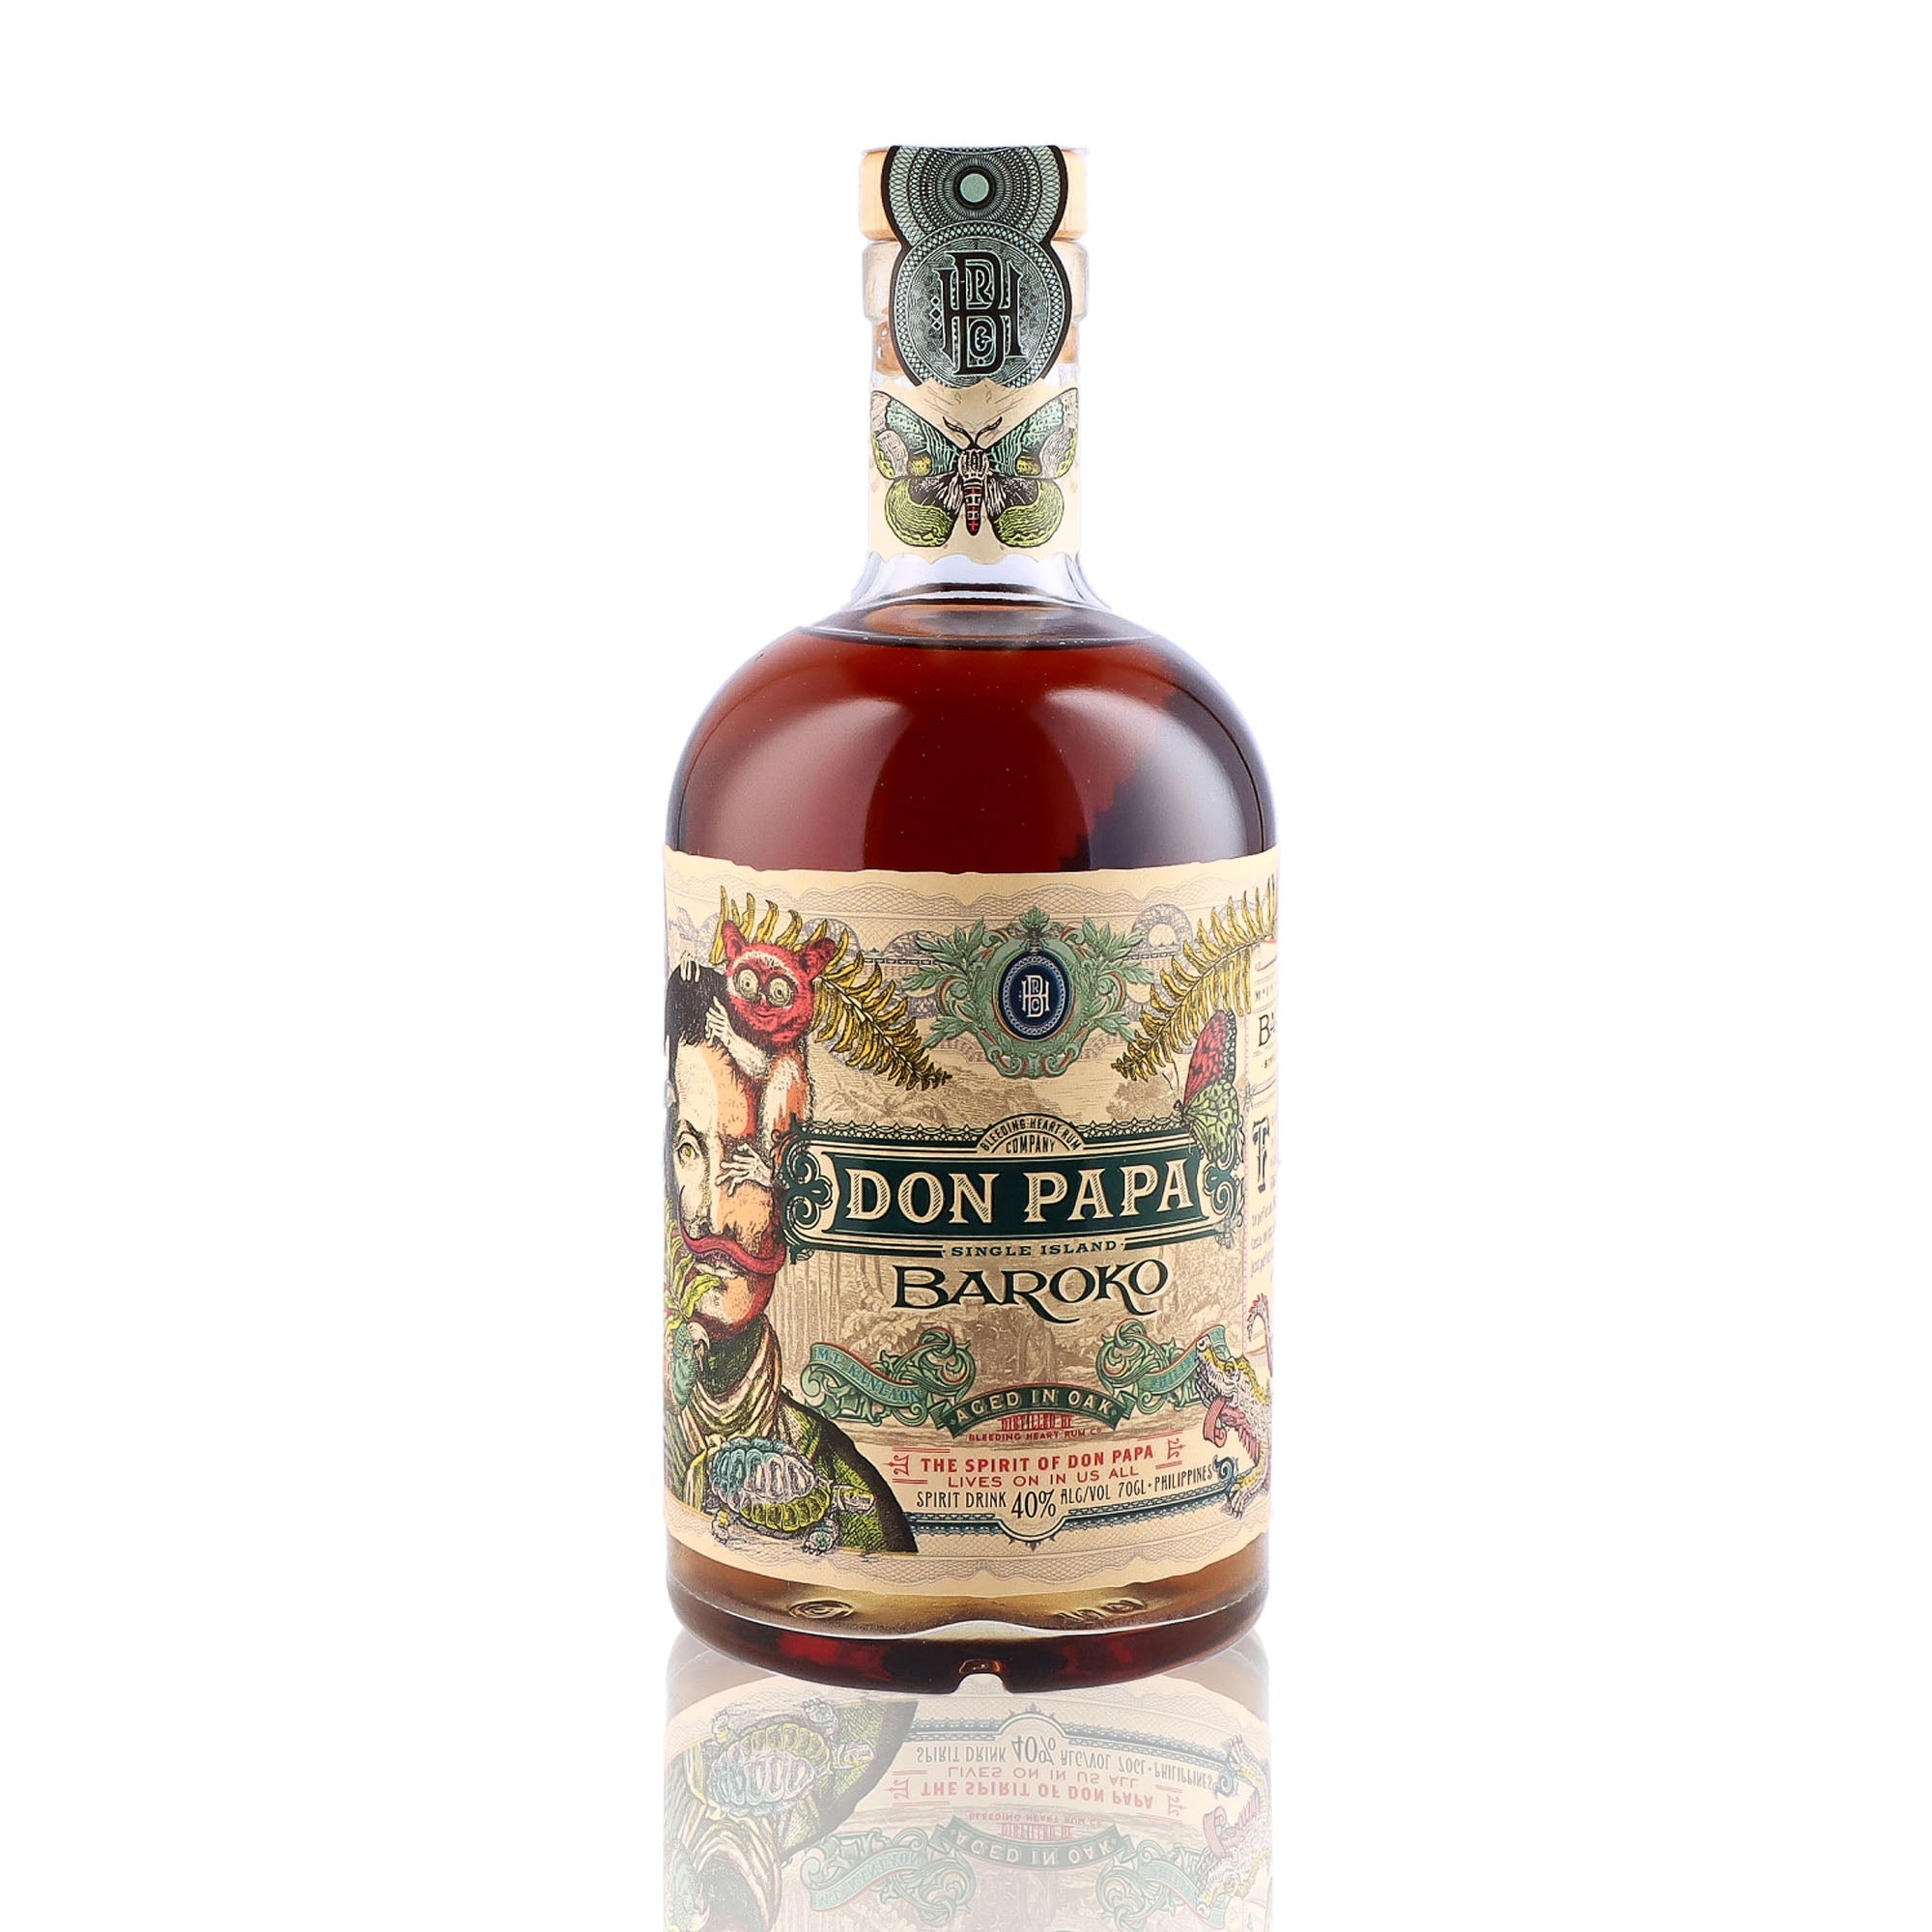 Une bouteille de rhum de mélasse, de la marque Don Papa, nommée Baroko.